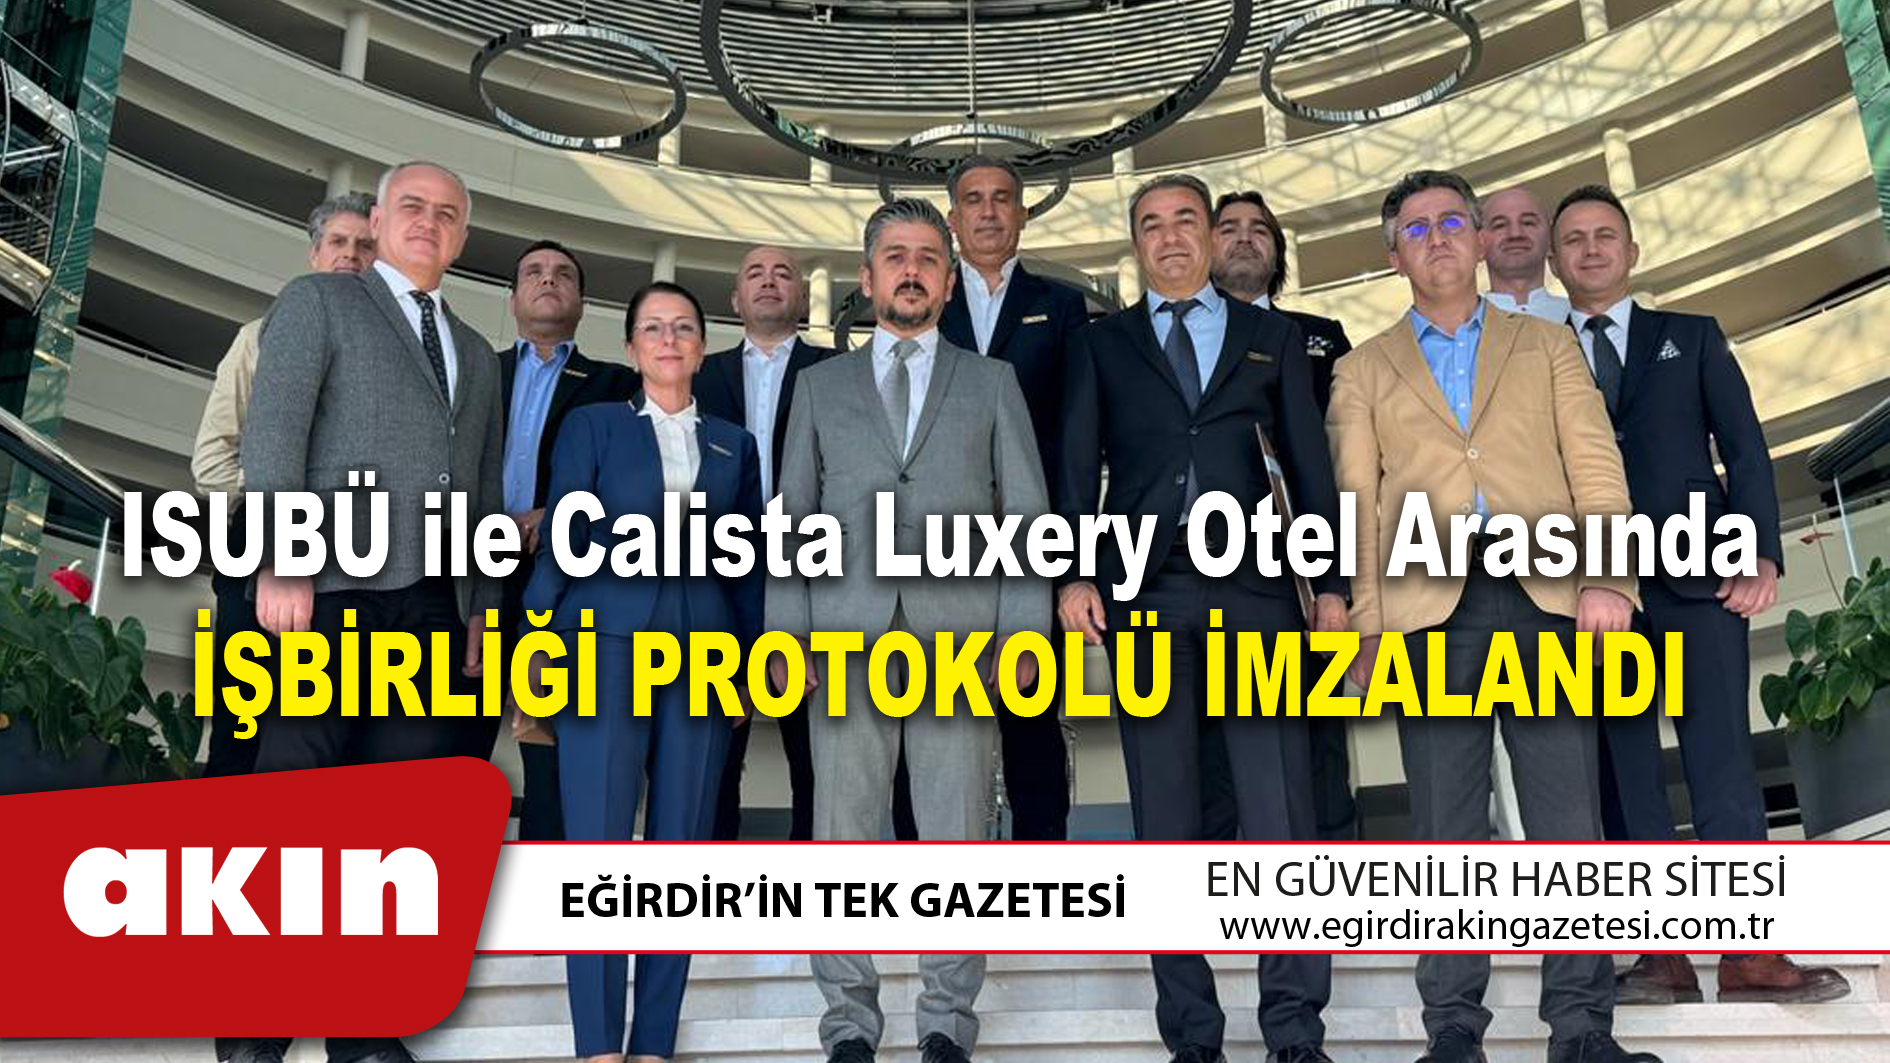 ISUBÜ ile Calista Luxery Otel arasında işbirliği protokolü imzalandı